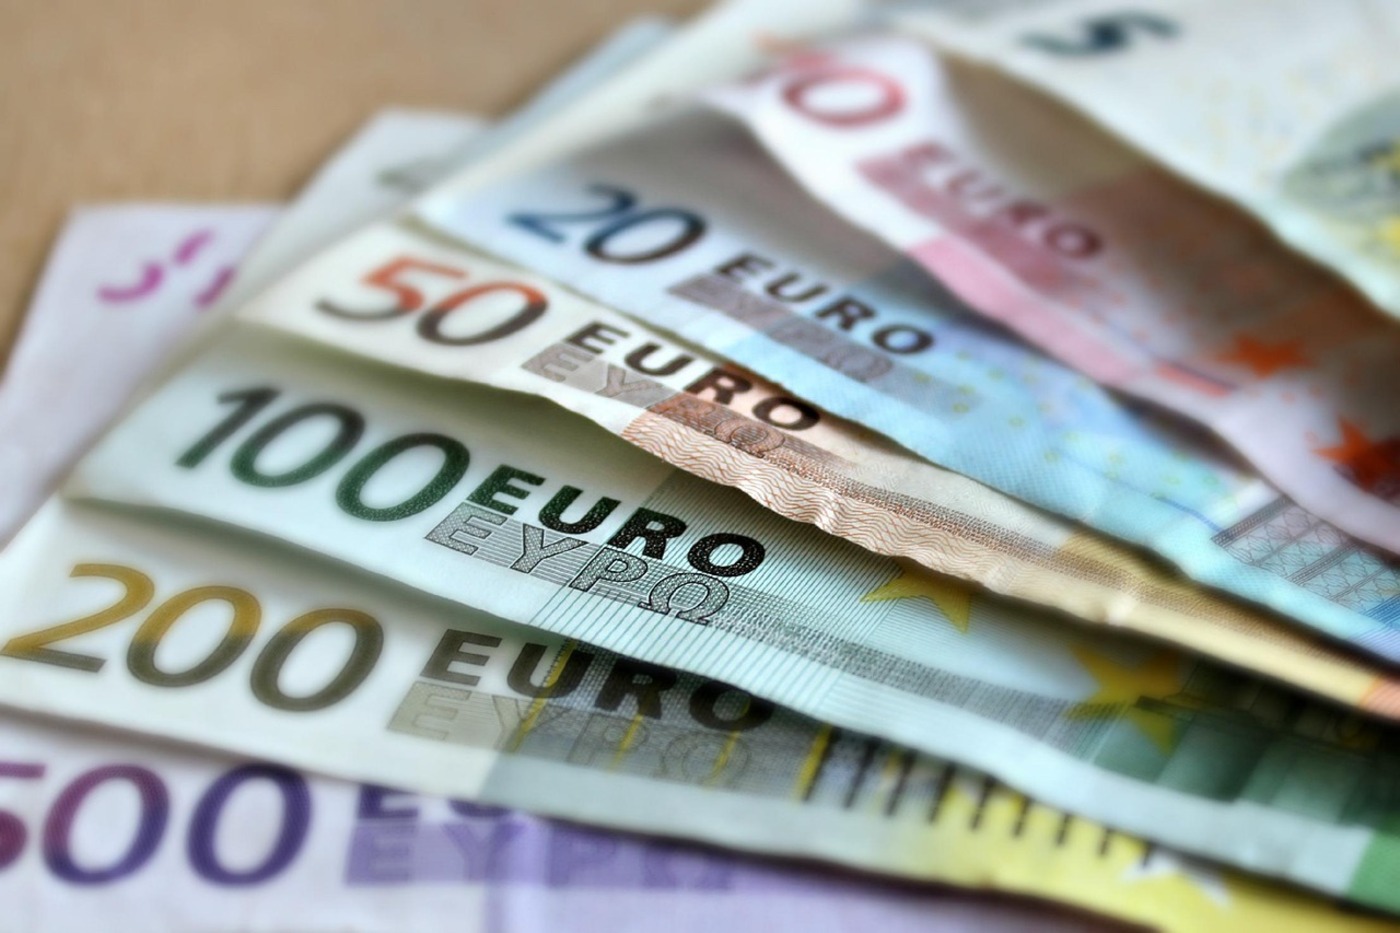 Billets en euros @pIxabay